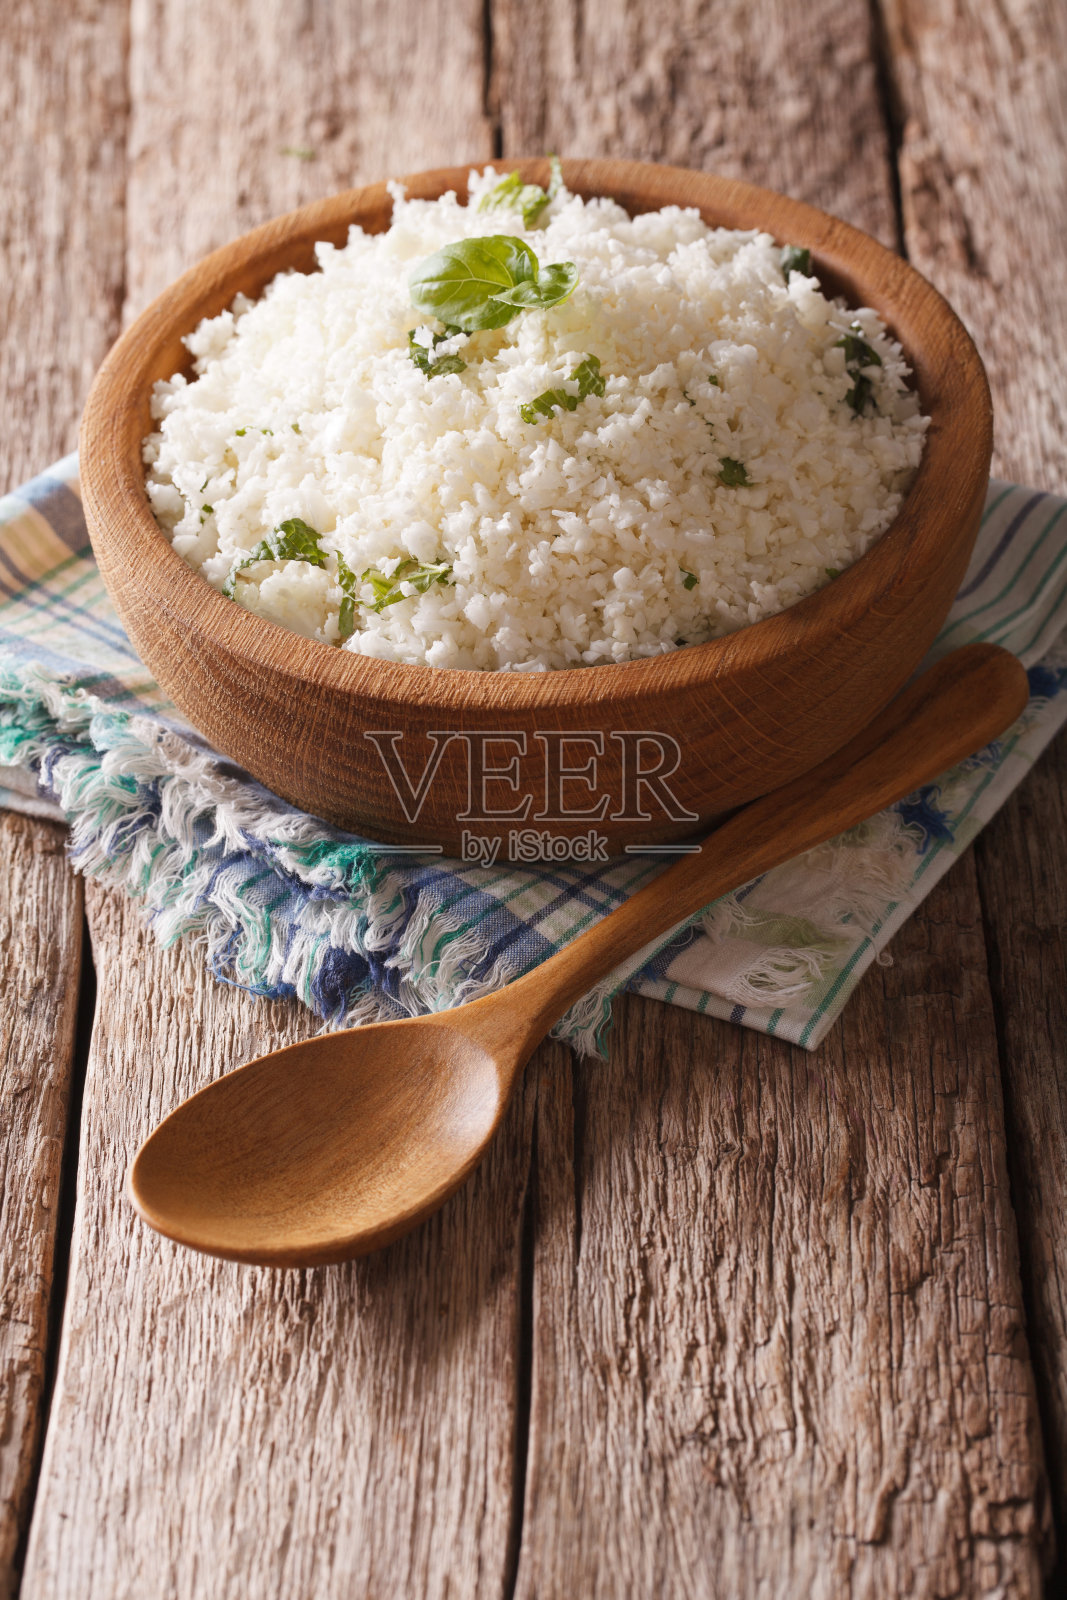 原始人食物:花椰菜米饭配香草。垂直照片摄影图片